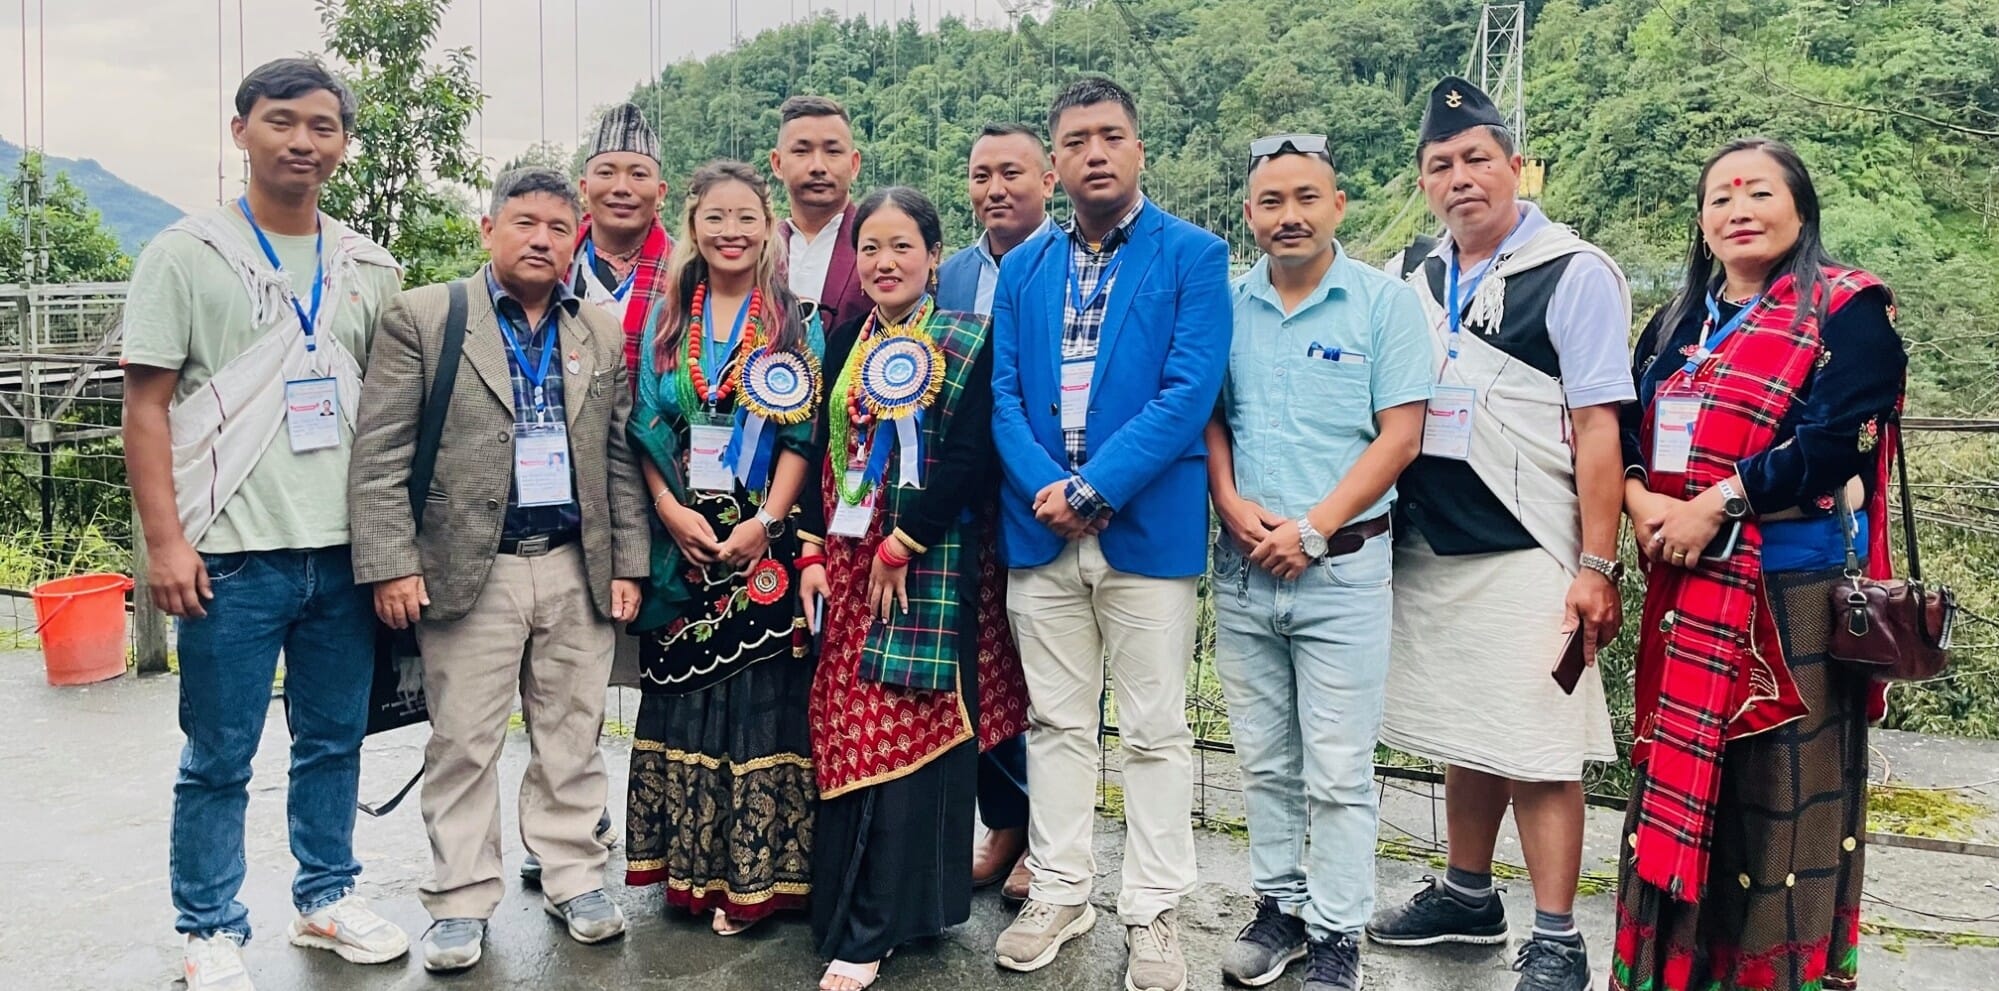 अन्तराष्ट्रिय दोस्रो तमू सम्मेलन देम्ताम सिक्किम, भारत (वि.स. २०७९ असोज २५ गते)